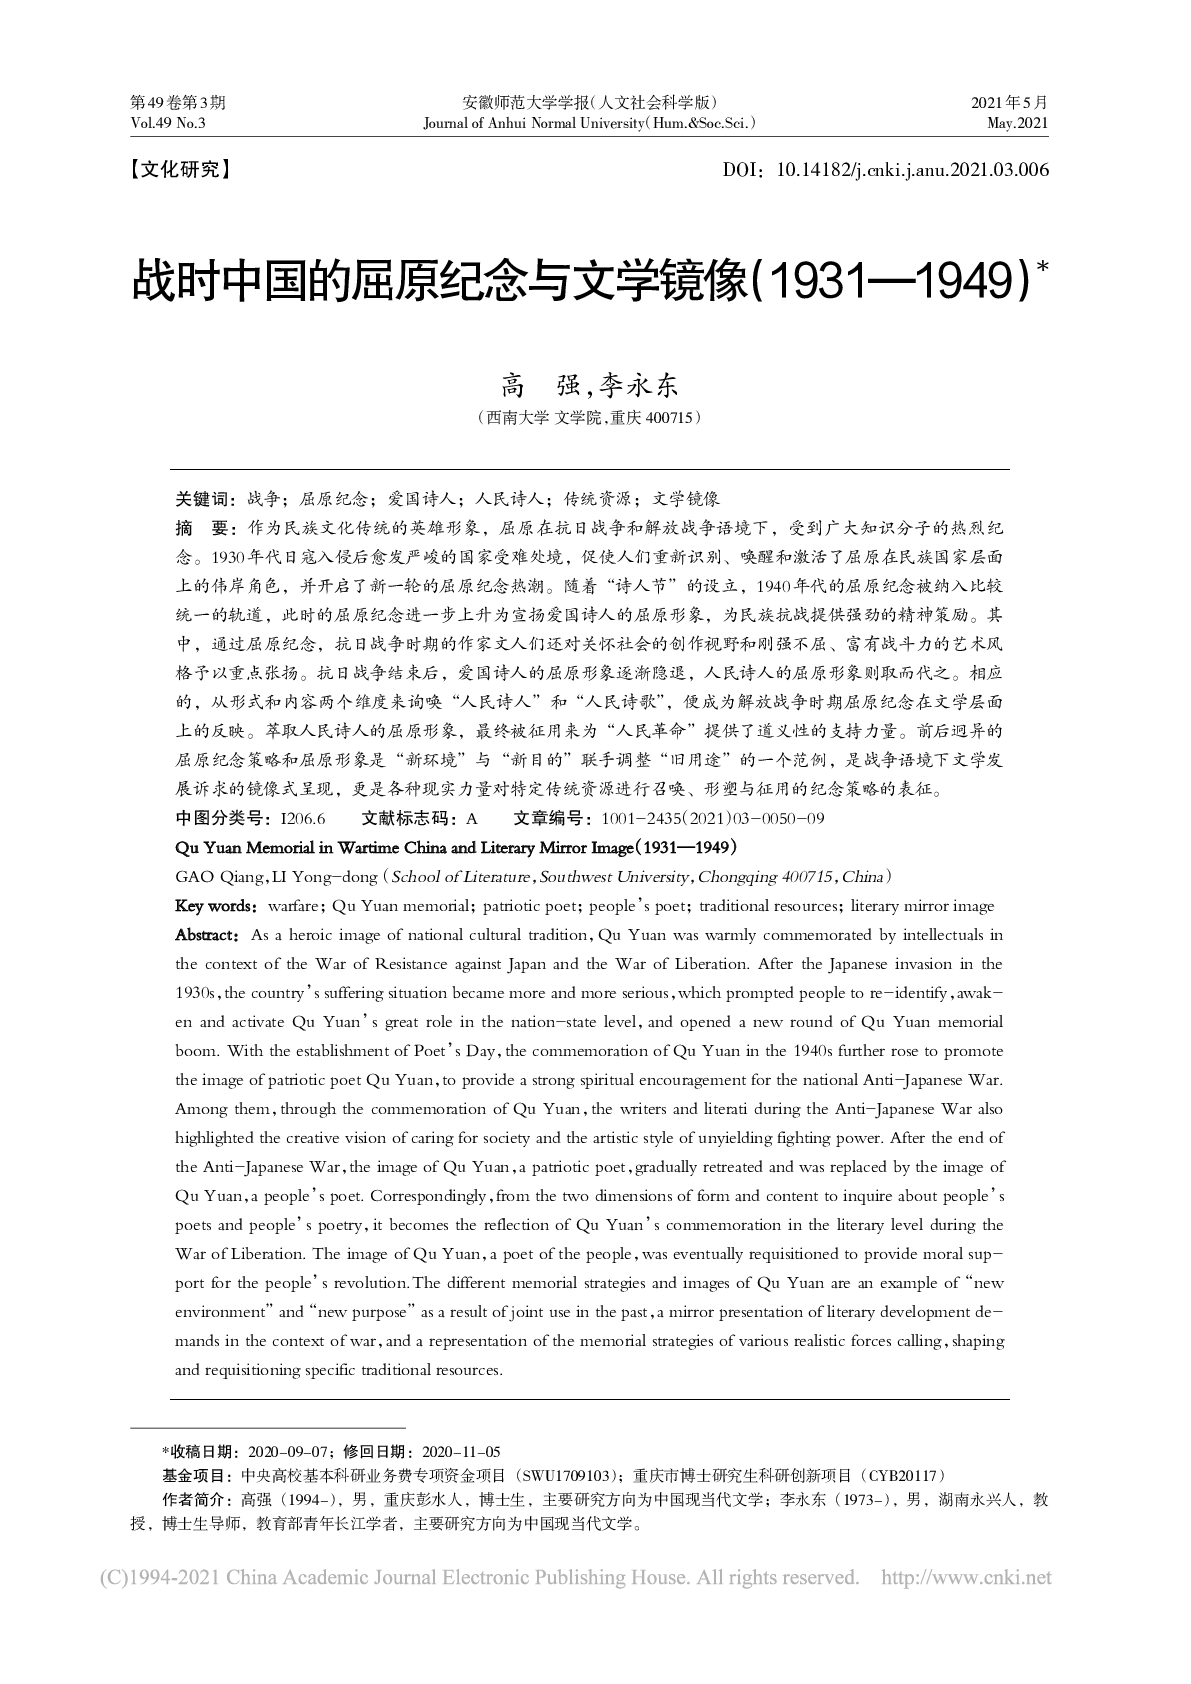 战时中国的屈原纪念与文学镜像（1931-1949）